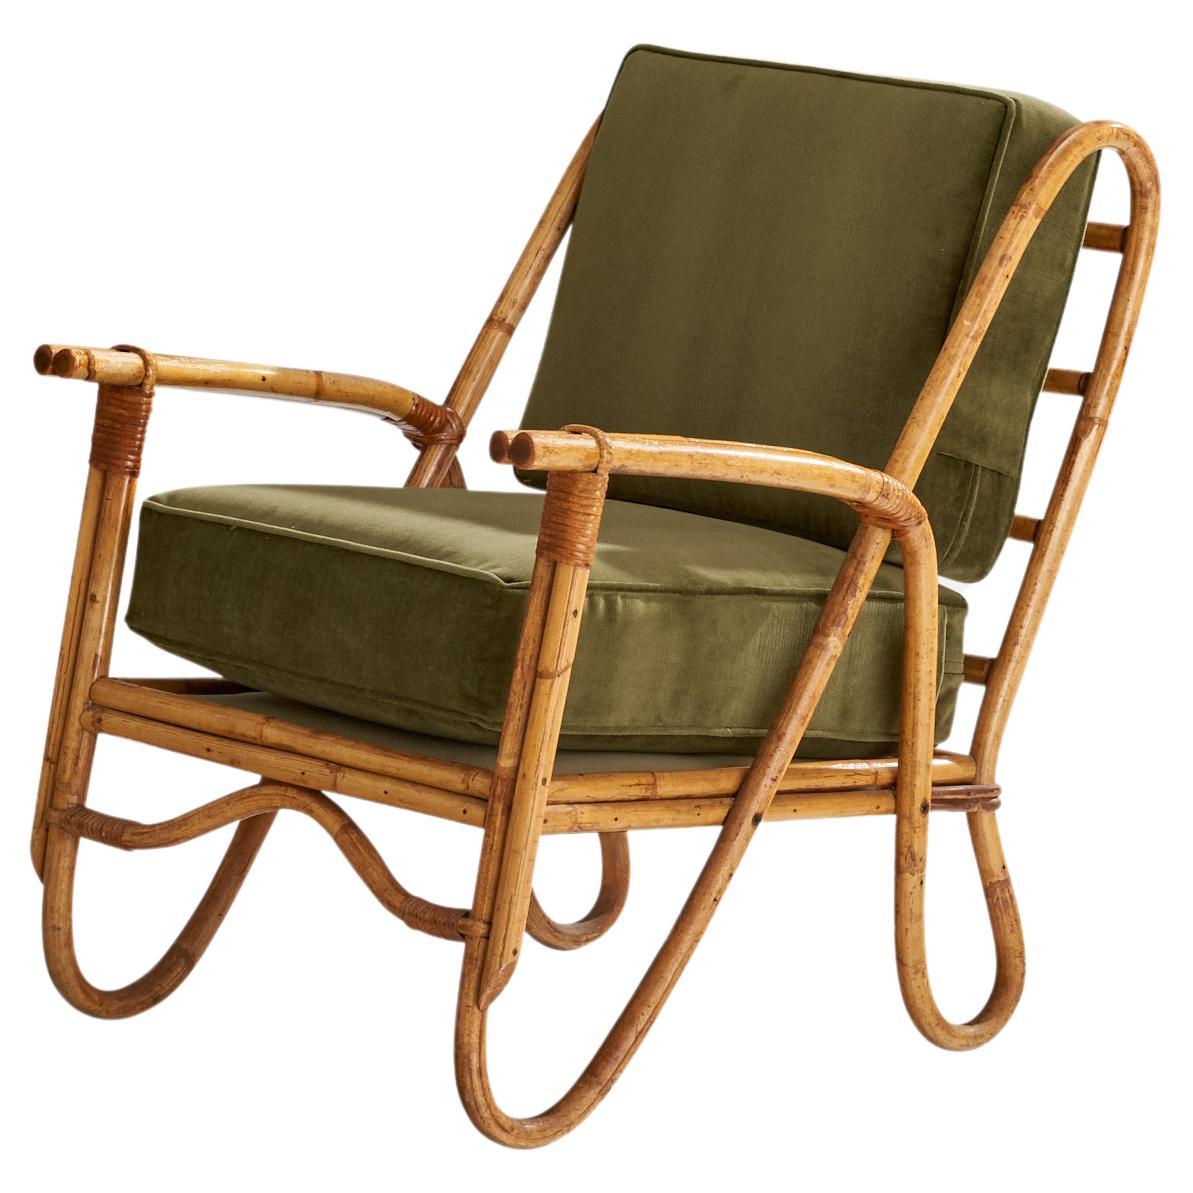 American Designer, Lounge Chair, Bamboo, Rattan, Velvet, USA, 1950s